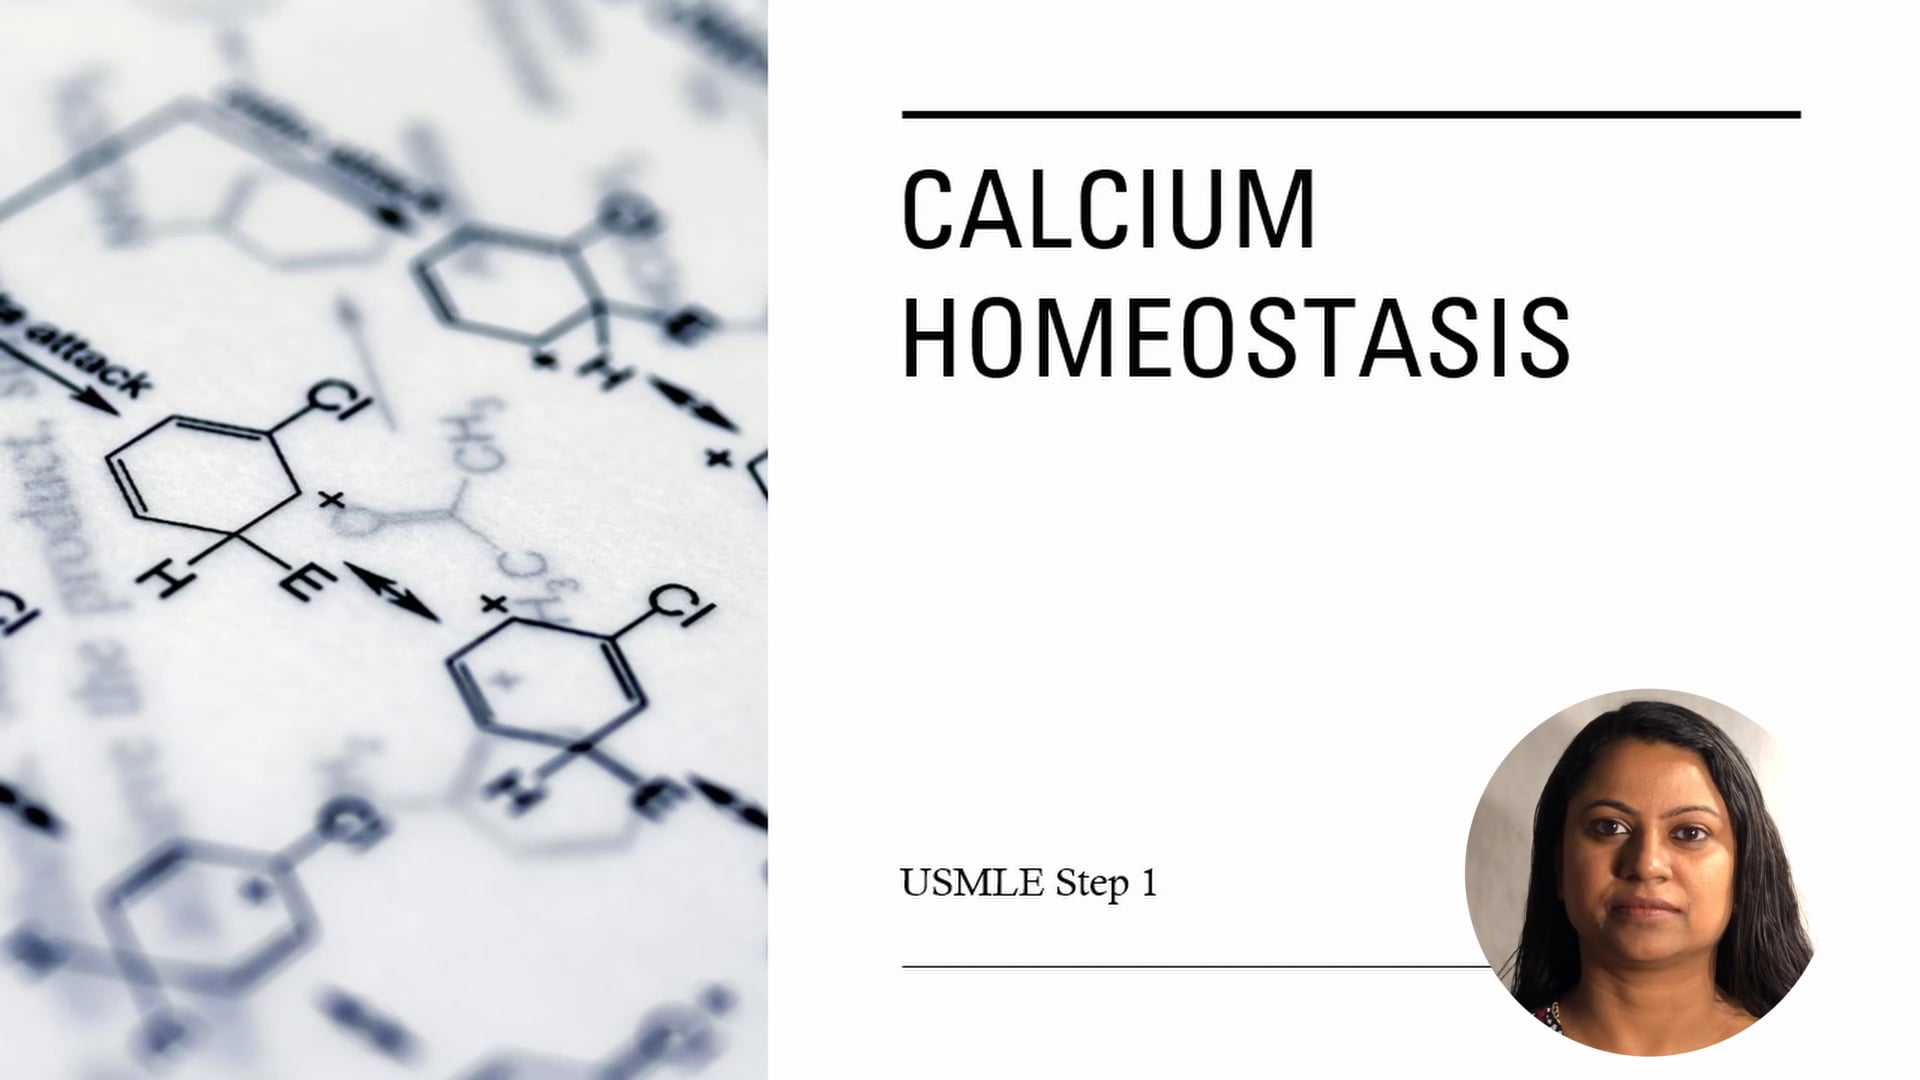 Calcium homeostasis